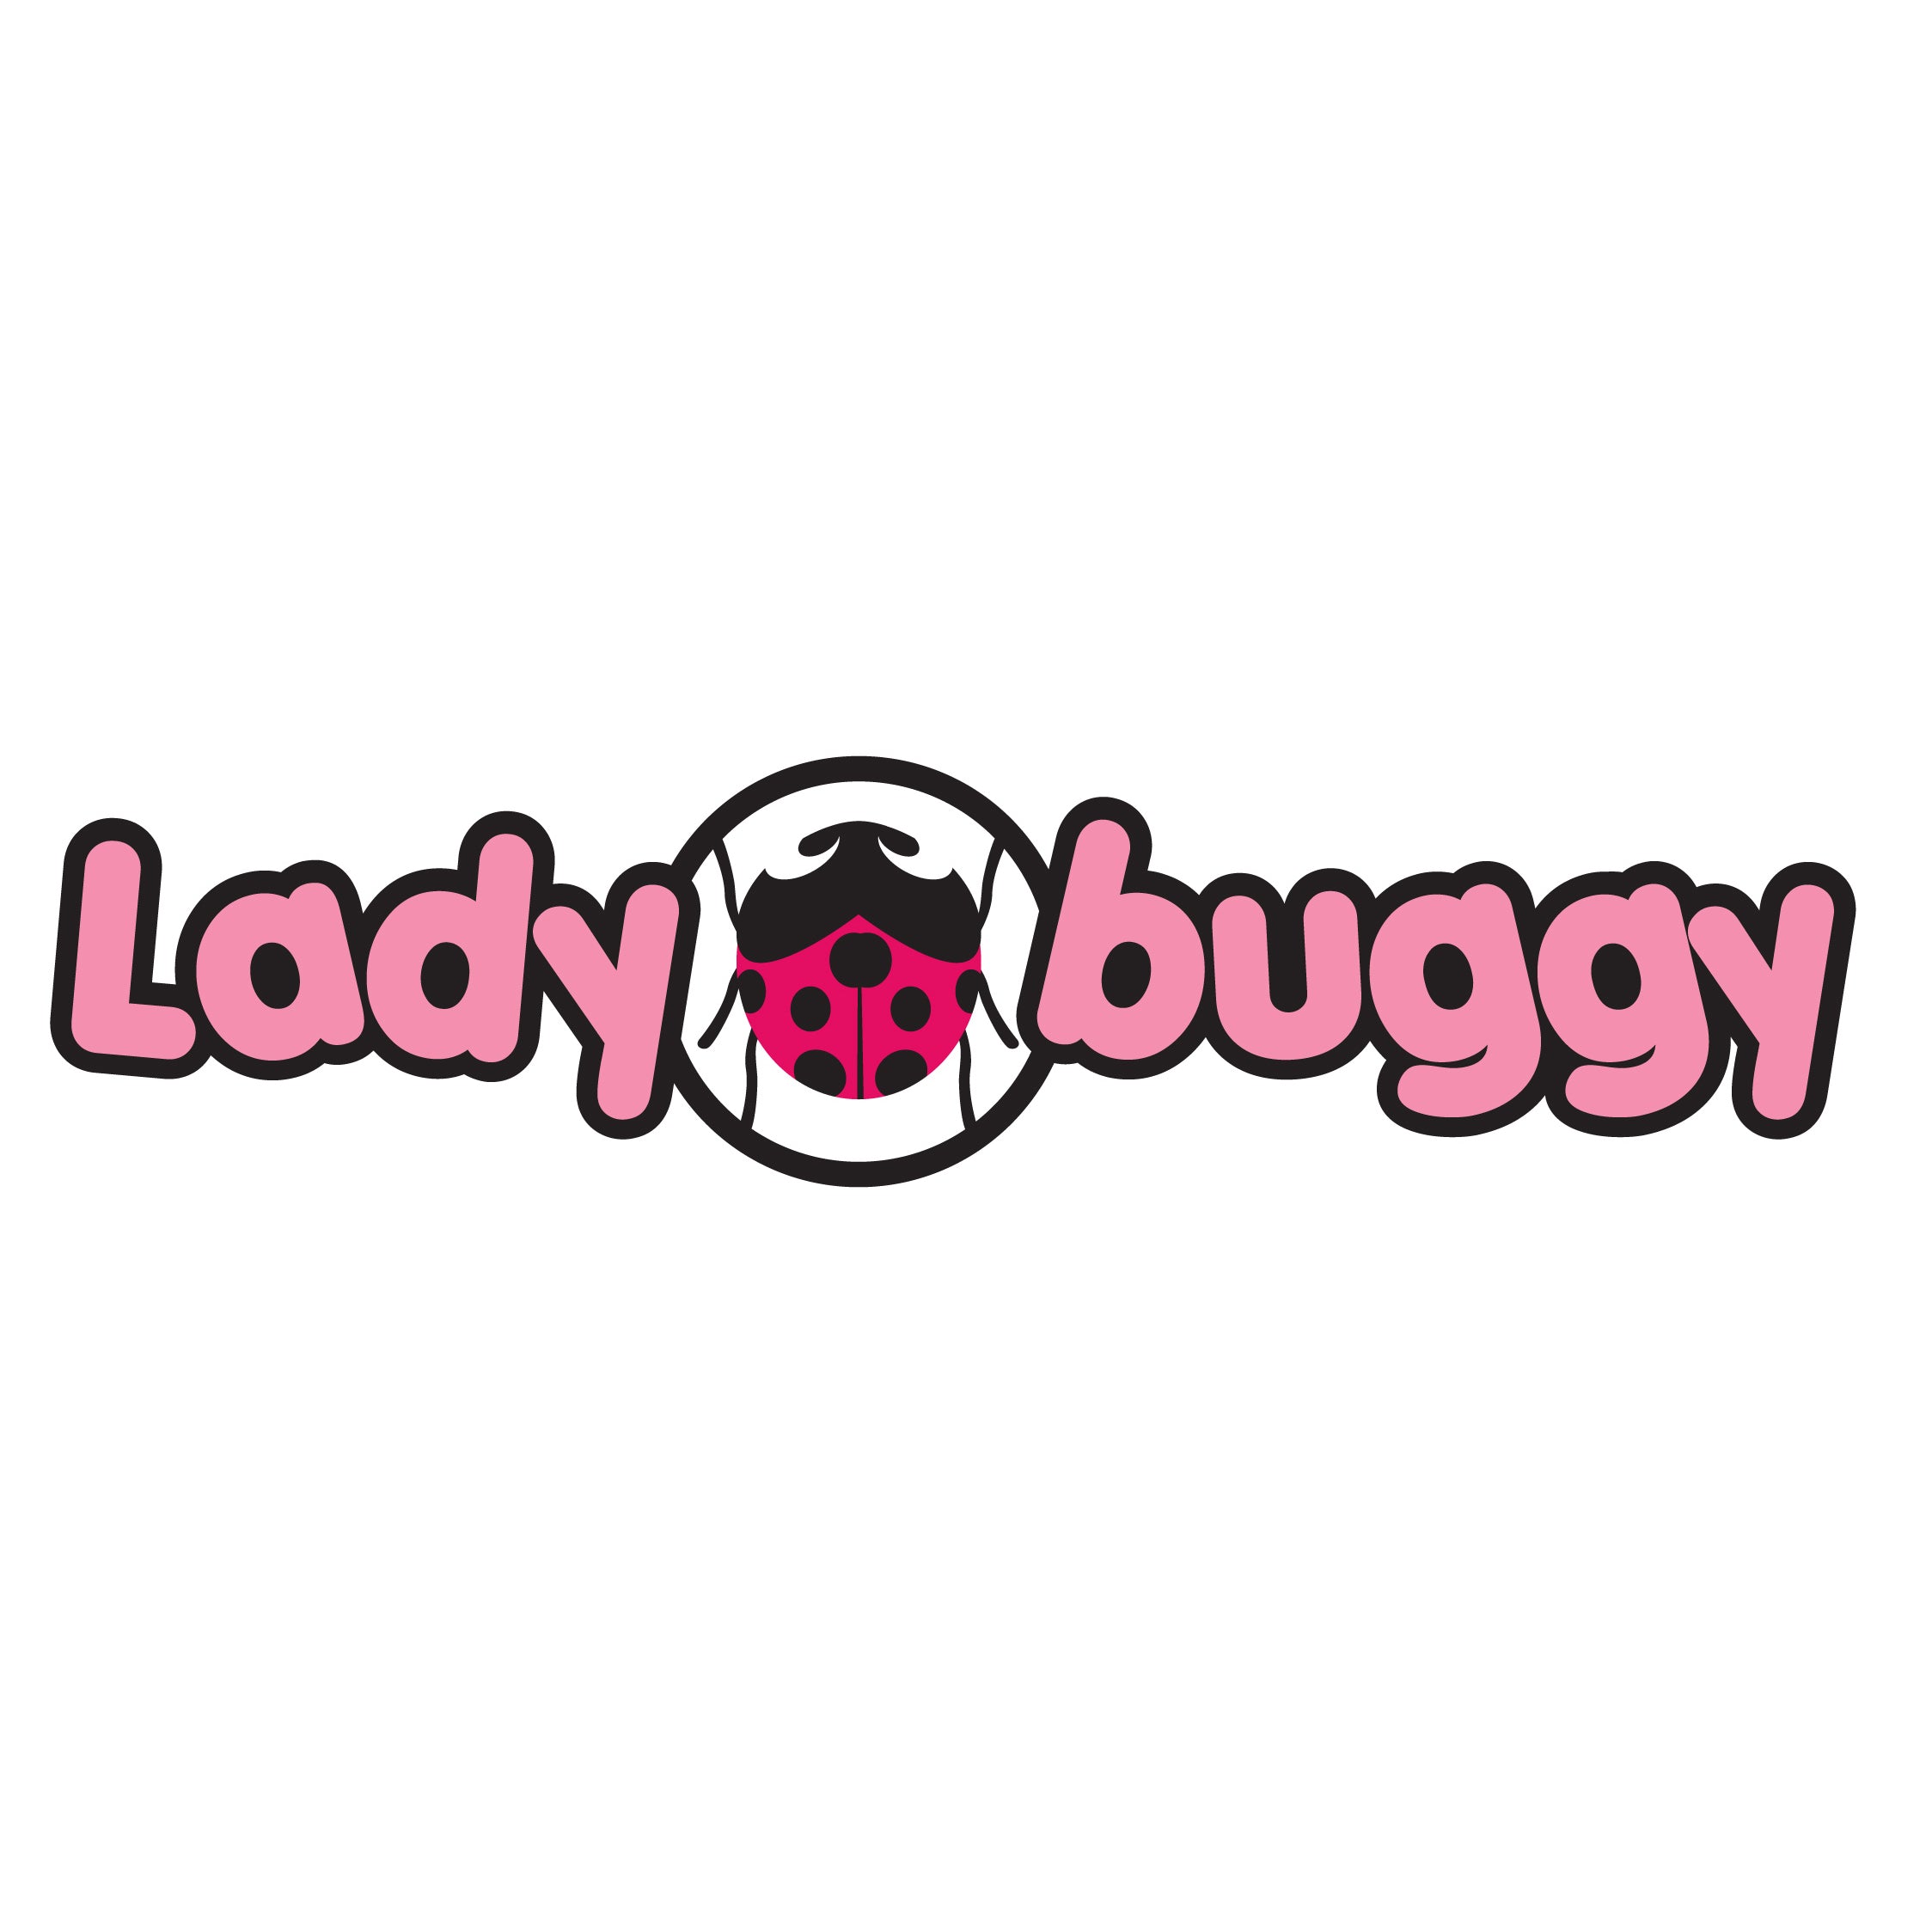 KETTLER Ladybuggy Folding Tricycle logo.